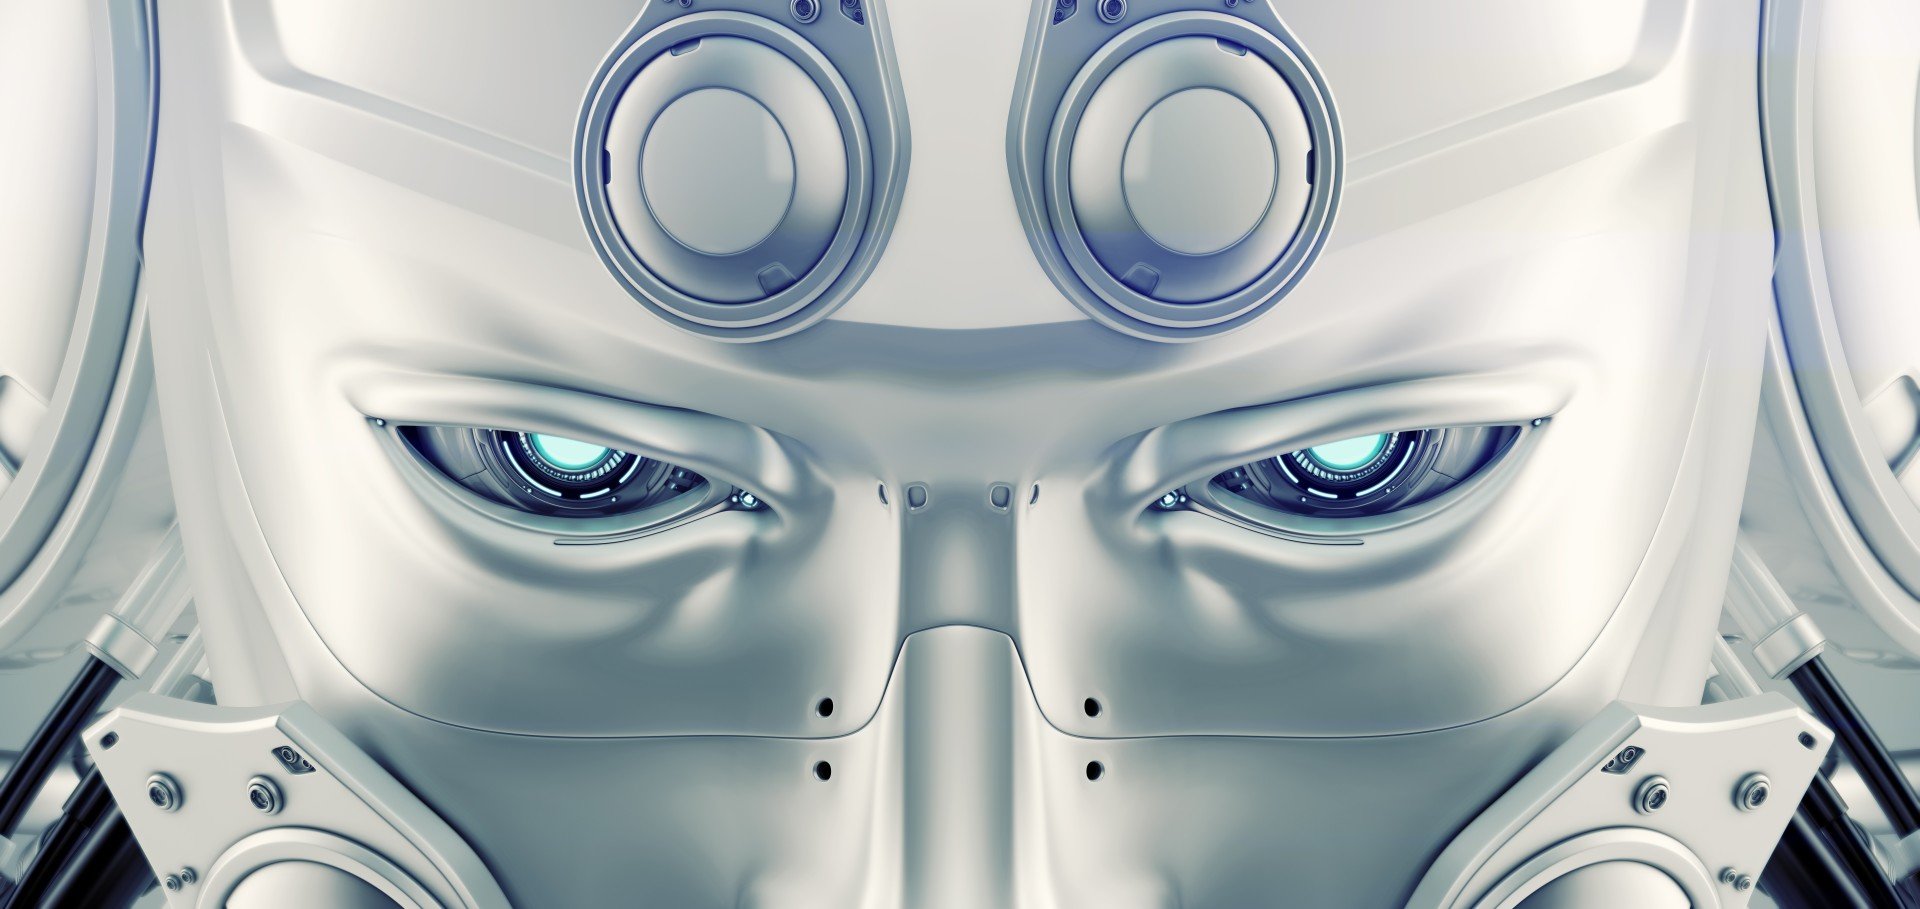 vladislav-ociacia-artificial-intelligence-robotic-head-6